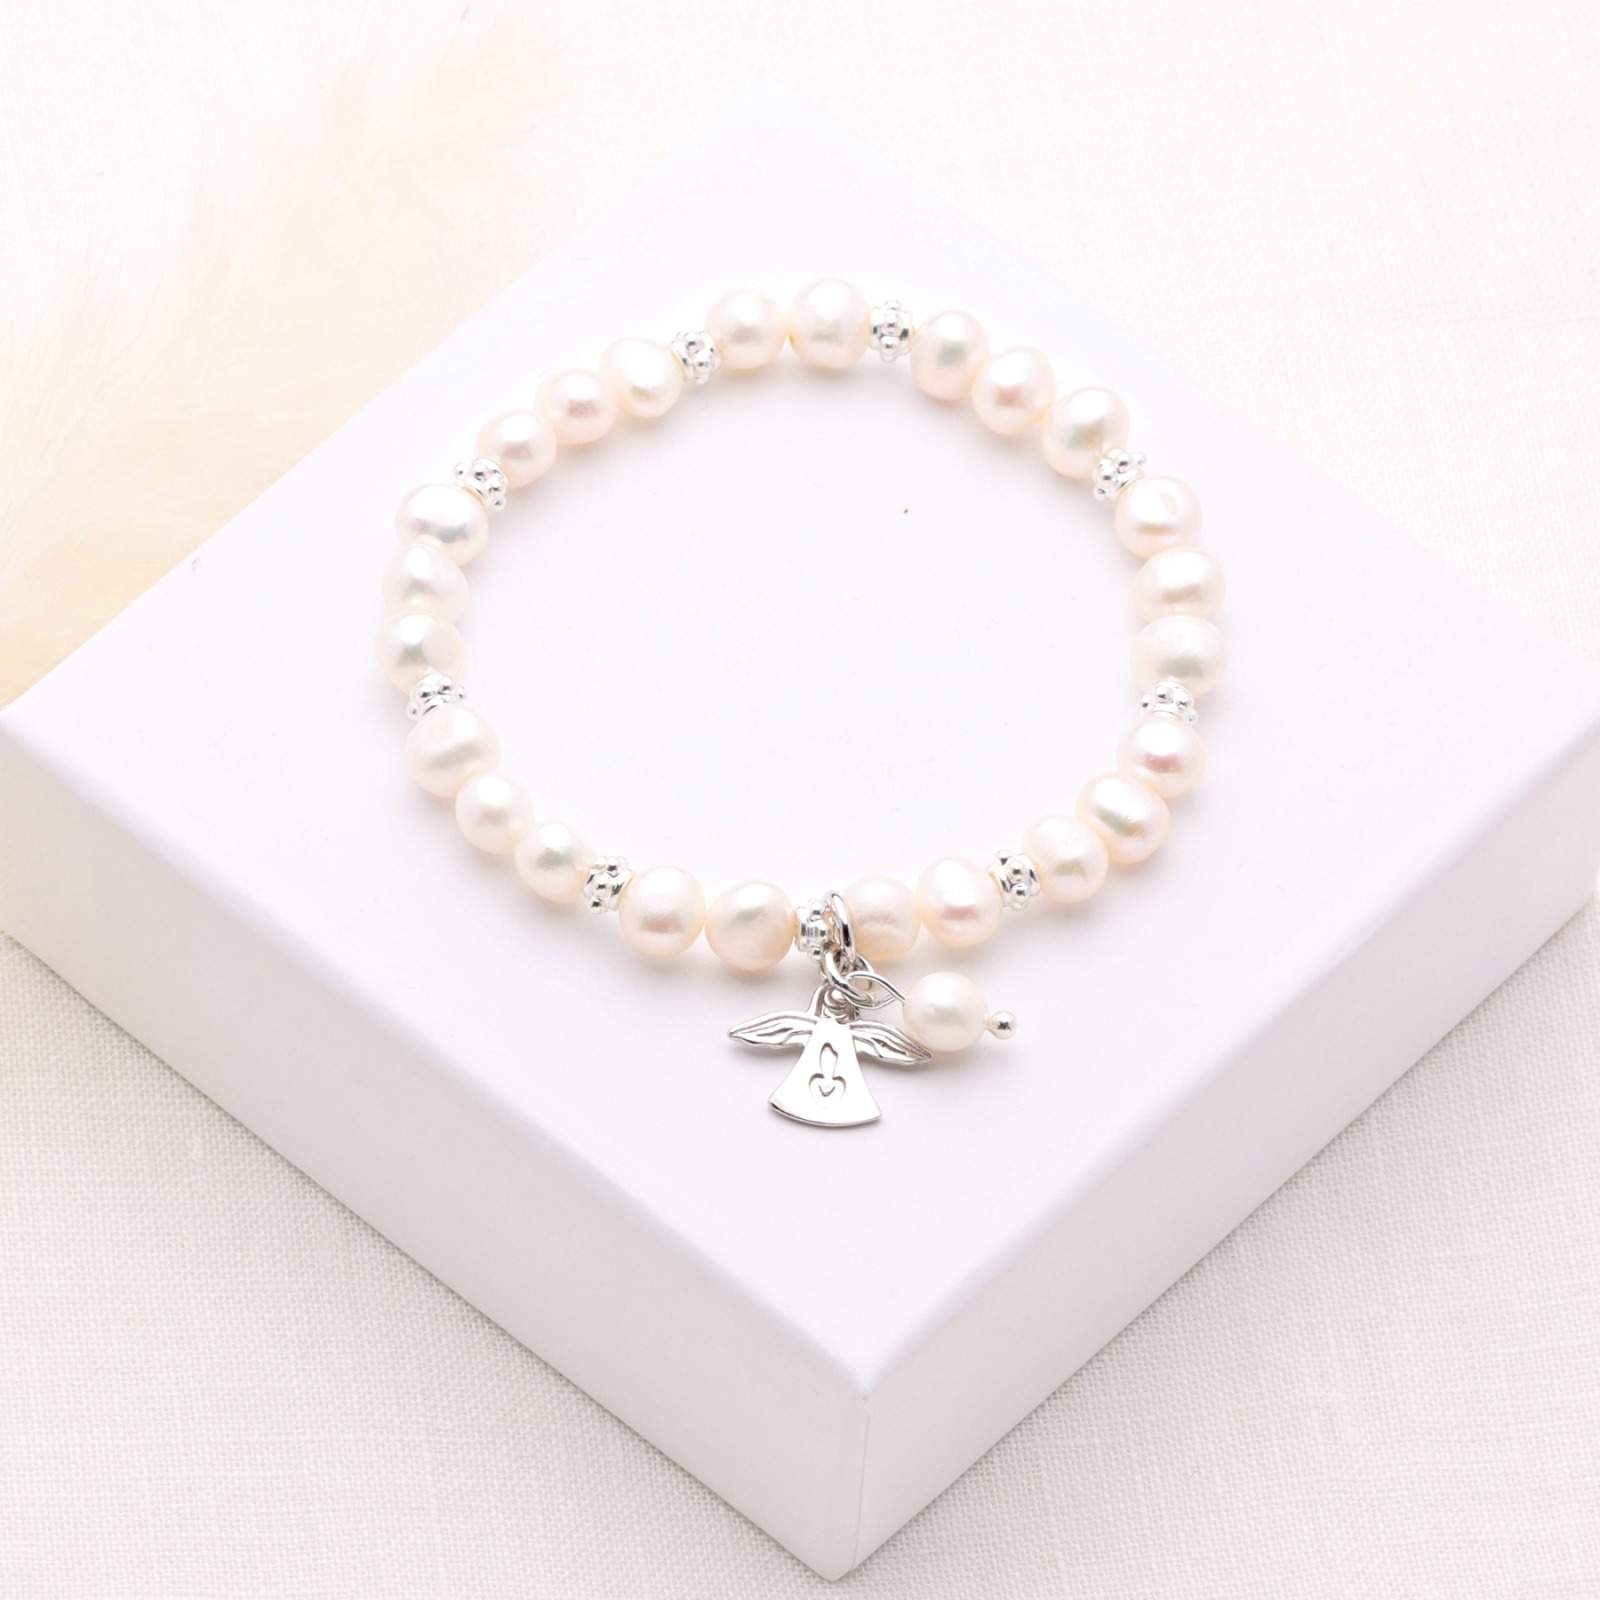 Armband aus echten Perlen mit Schutzengel Silber Geschenk zur Kommunion elastisch